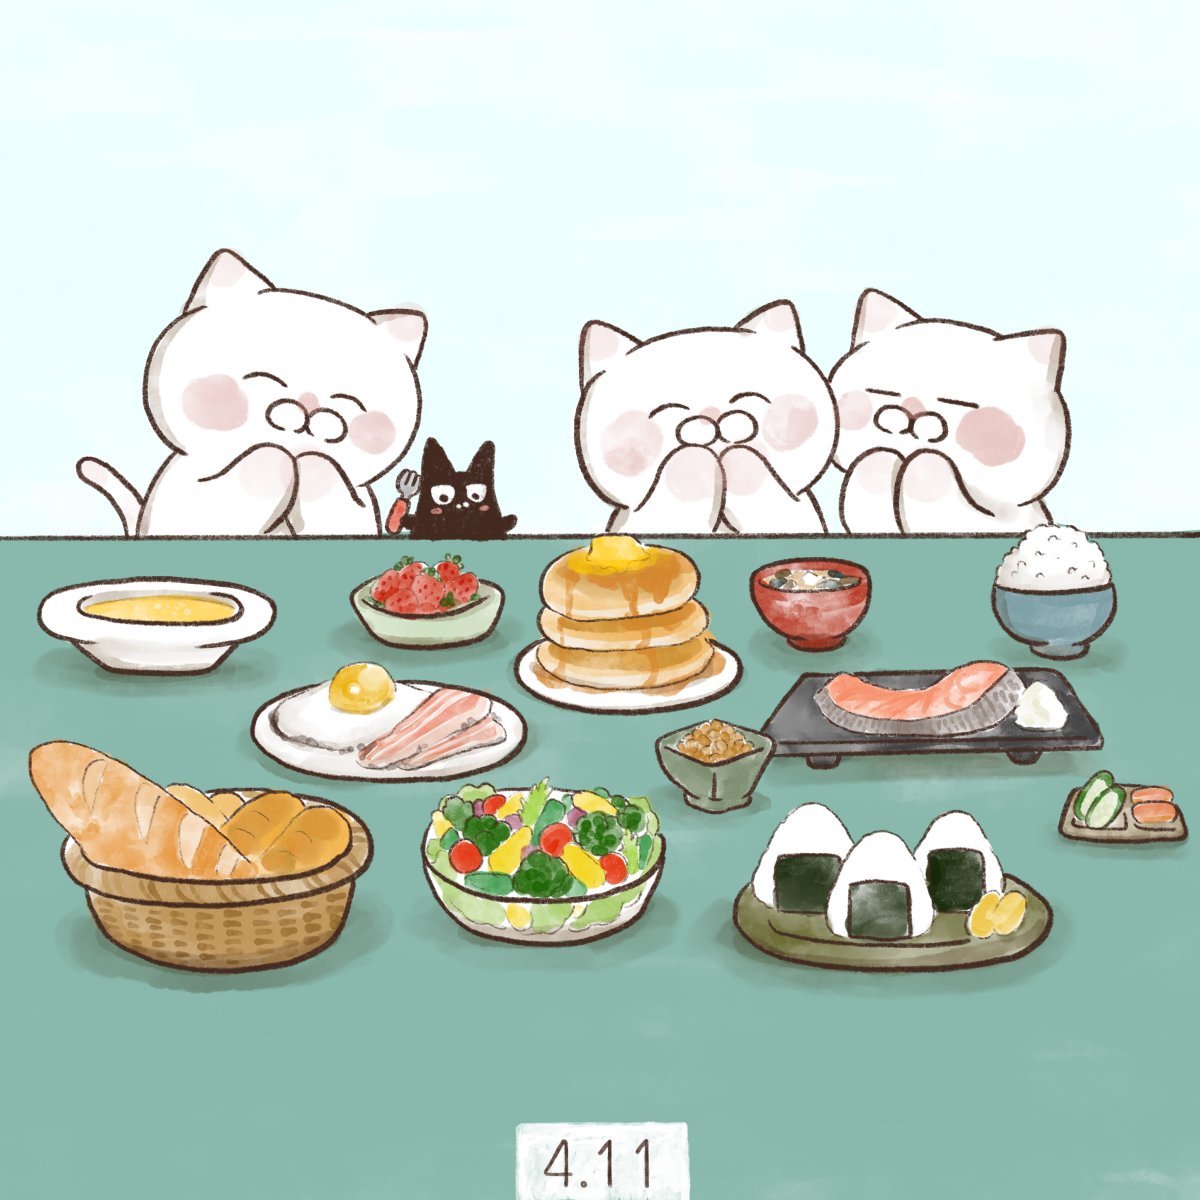 「4月11日【 しっかりいい朝食の日 】「し(4)っかりいい(11)朝食」の語呂に」|大和猫のイラスト